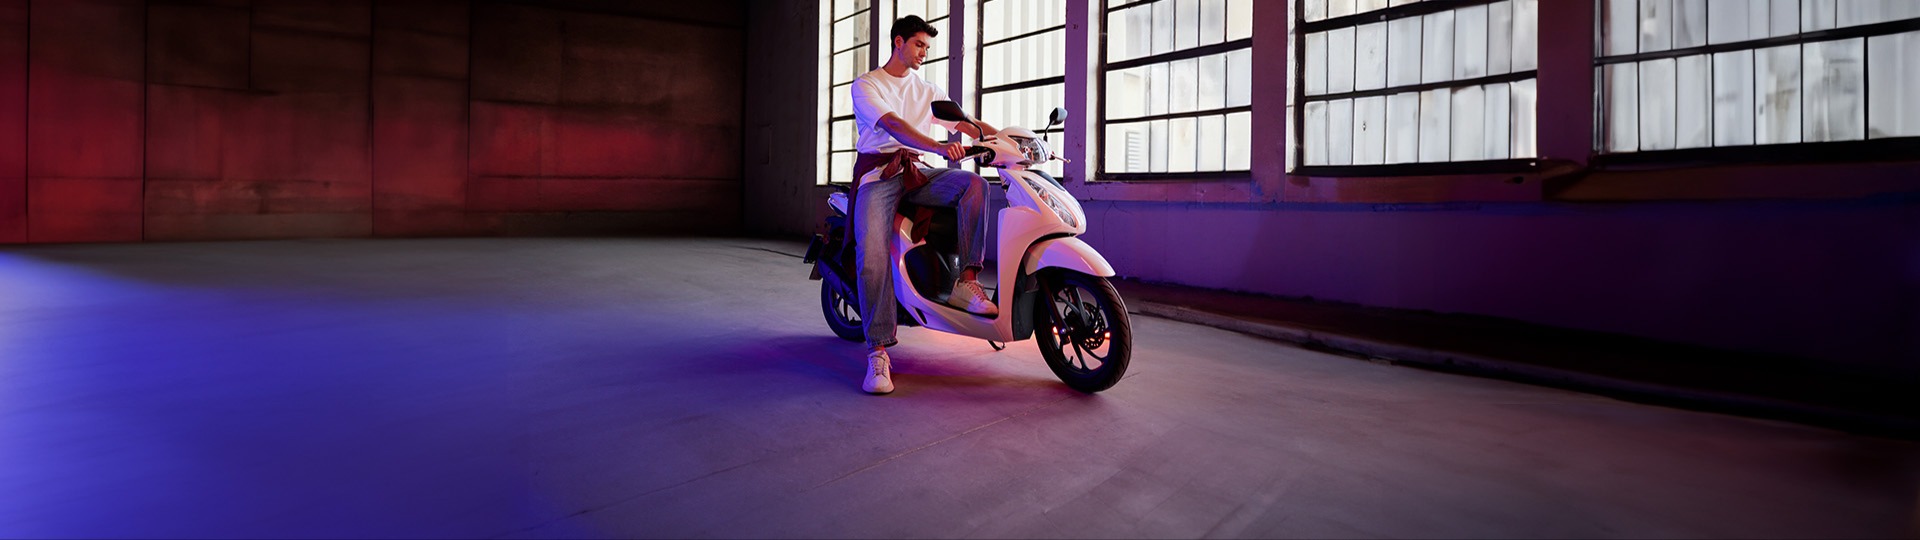  Kıvrak Motor 40.000 TL’ye vade farksız 12 ay taksitle sizin de ilk motosikletiniz Honda Dio olsun.